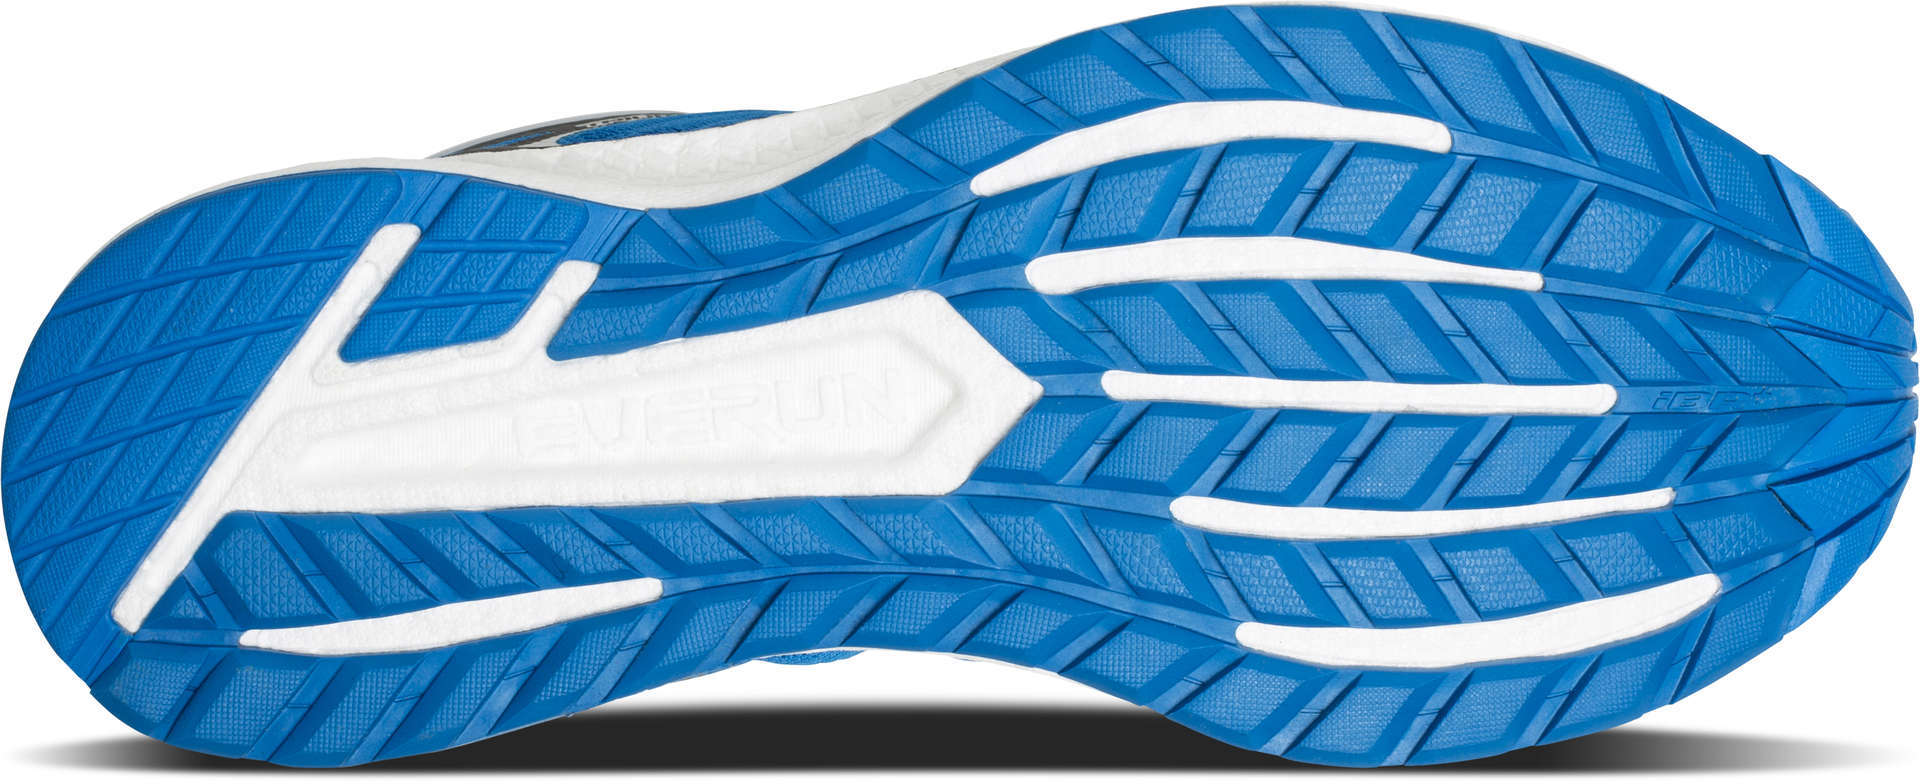 Saucony Triumph ISO 4 Hardloopschoenen Blauw/Zwart/Wit Heren